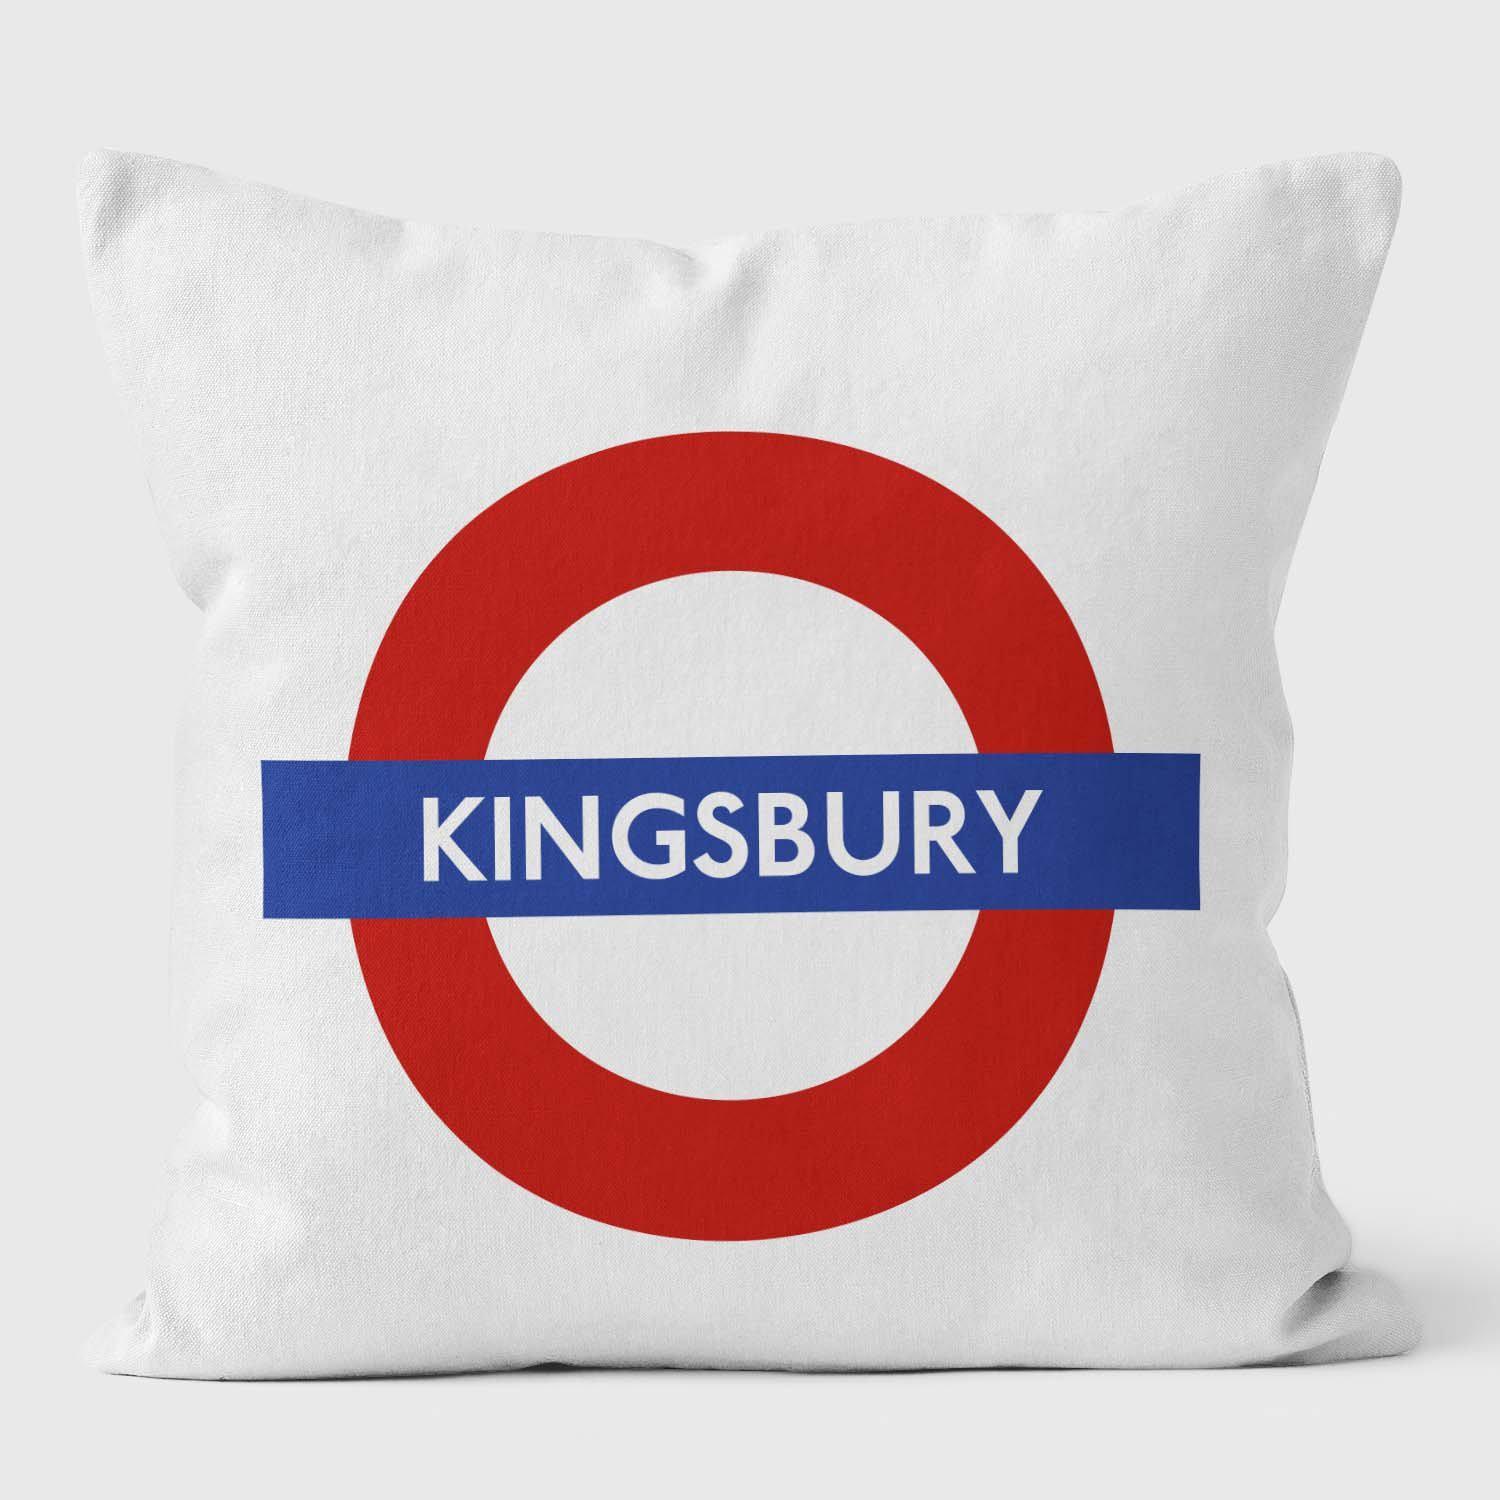 Kingsbury London Underground Tube Station Roundel Cushion - Handmade Cushions UK - WeLoveCushions